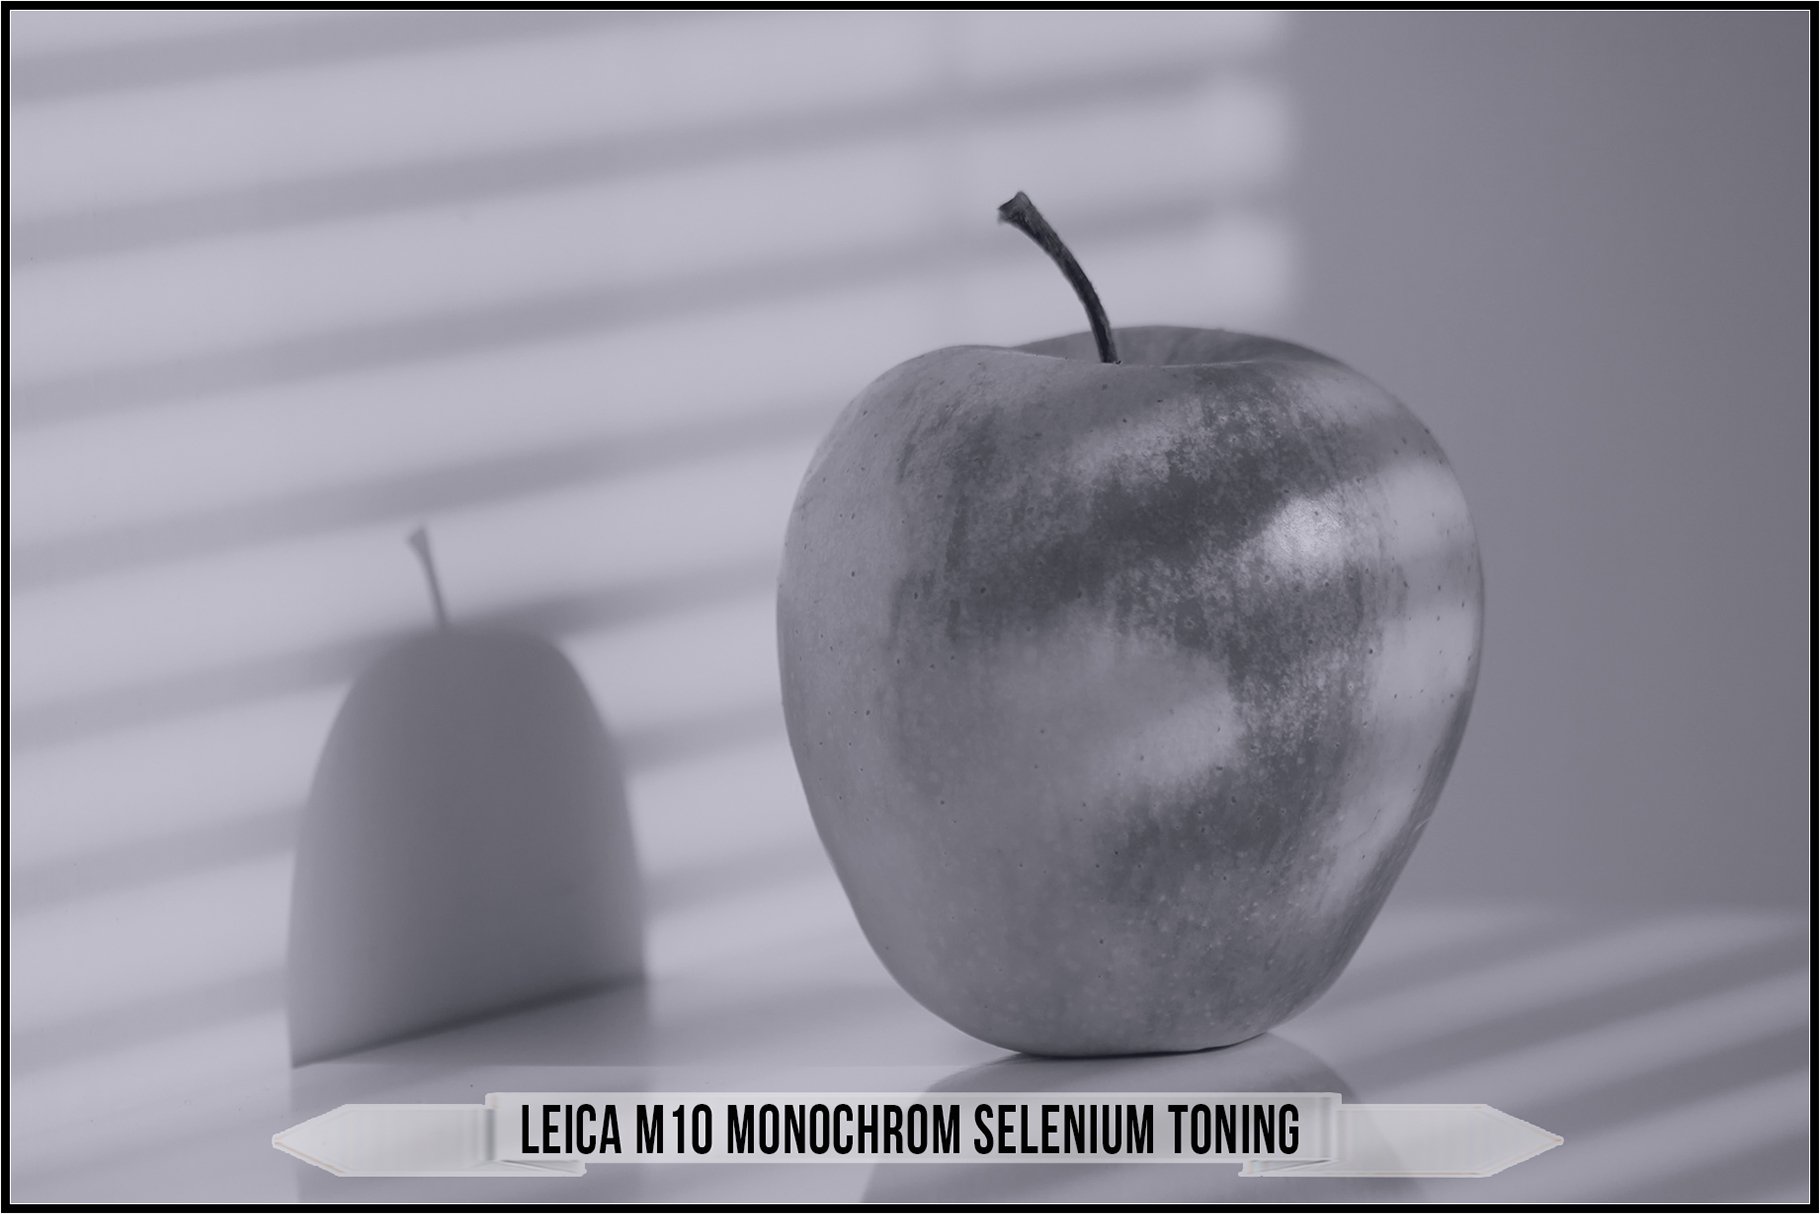 leica m10 monochrom selenium toning 969